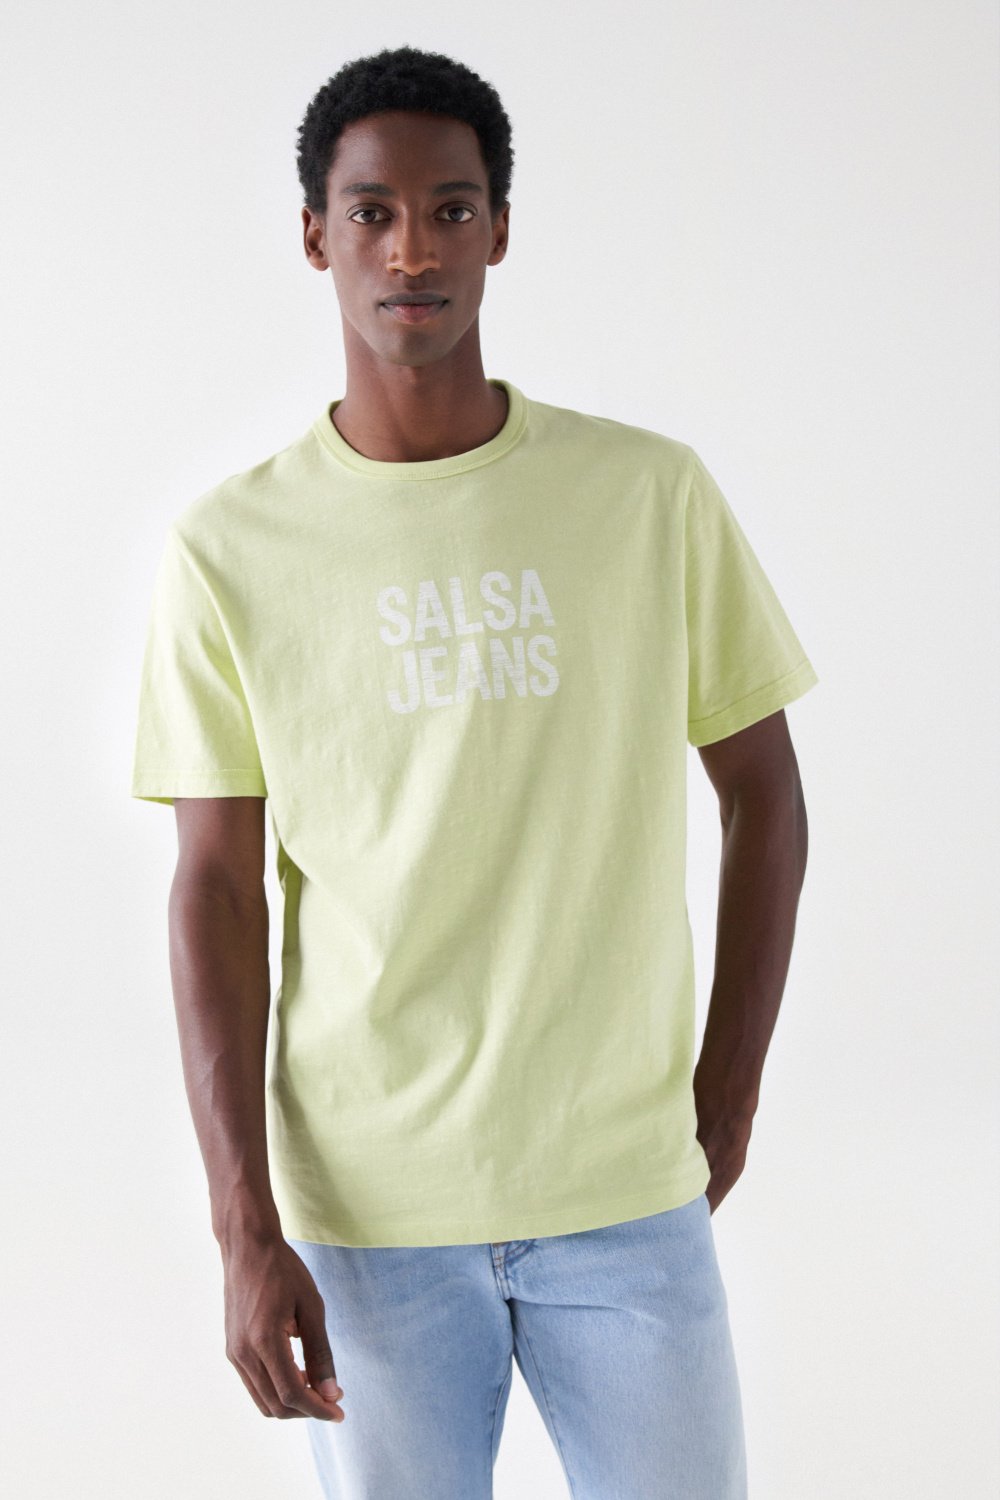 REGULAR T-SHIRT WITH BRANDING - Salsa